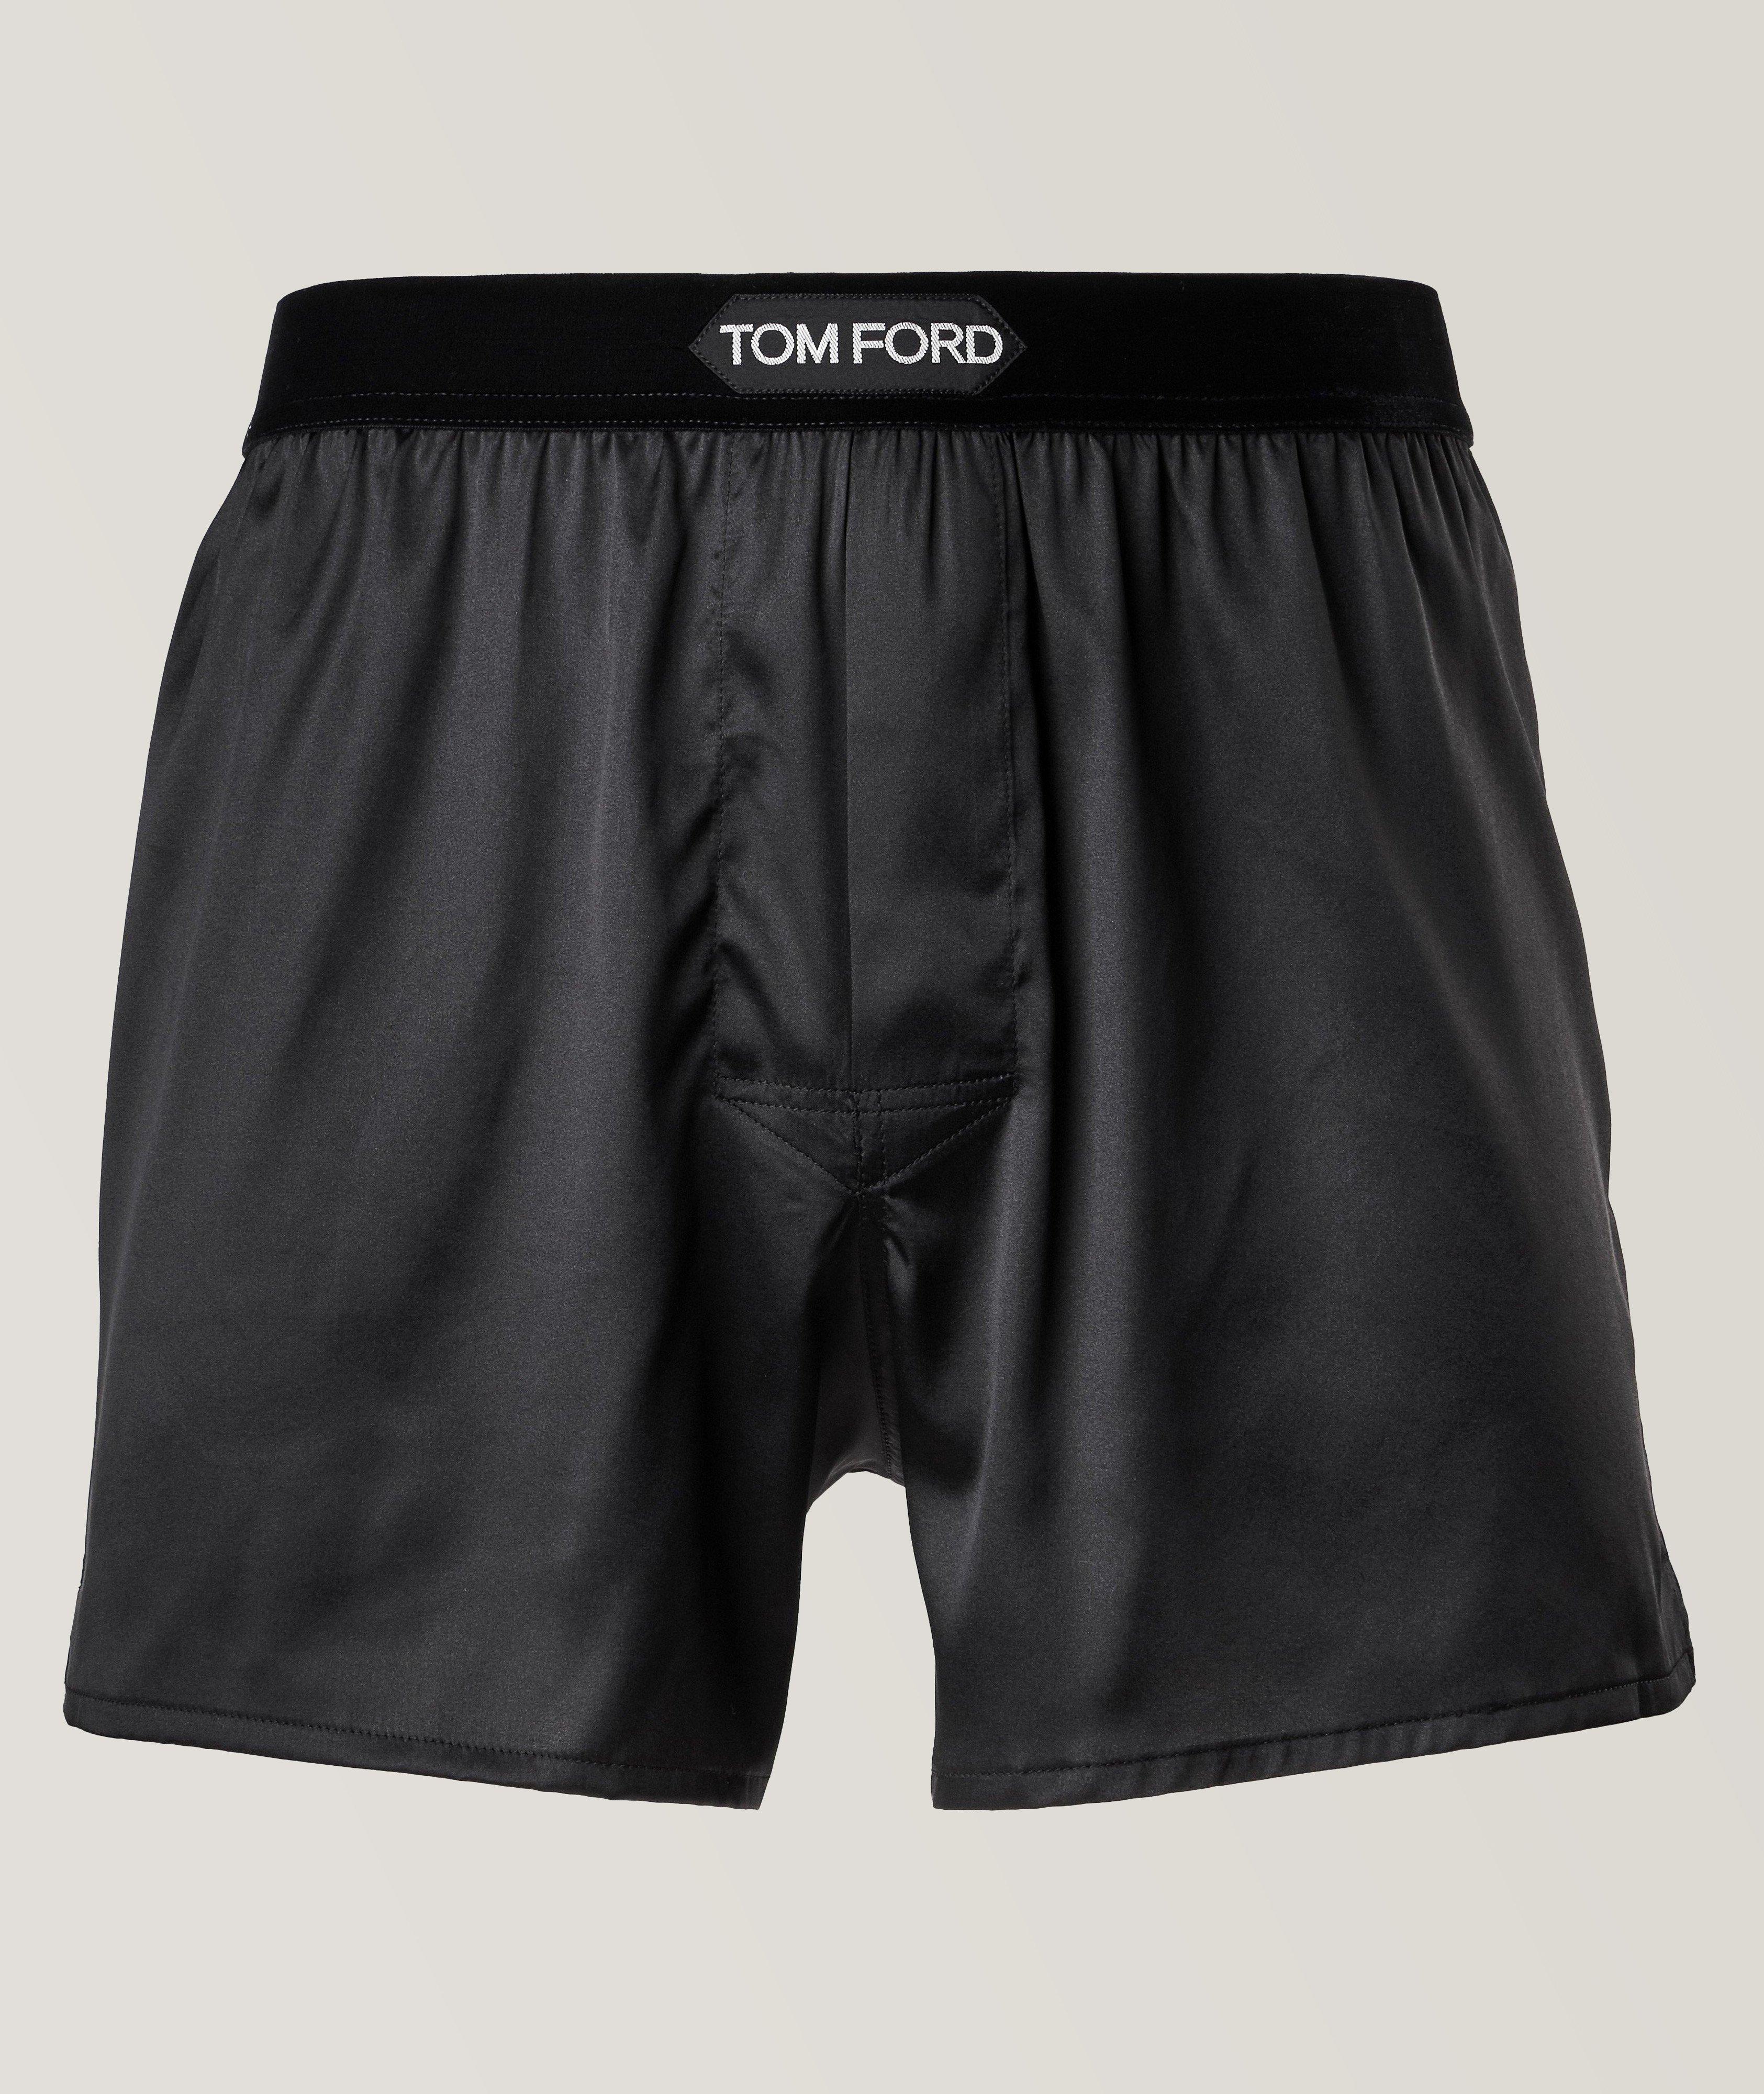 TOM FORD Stretch-Silk Boxers | Underwear | Harry Rosen